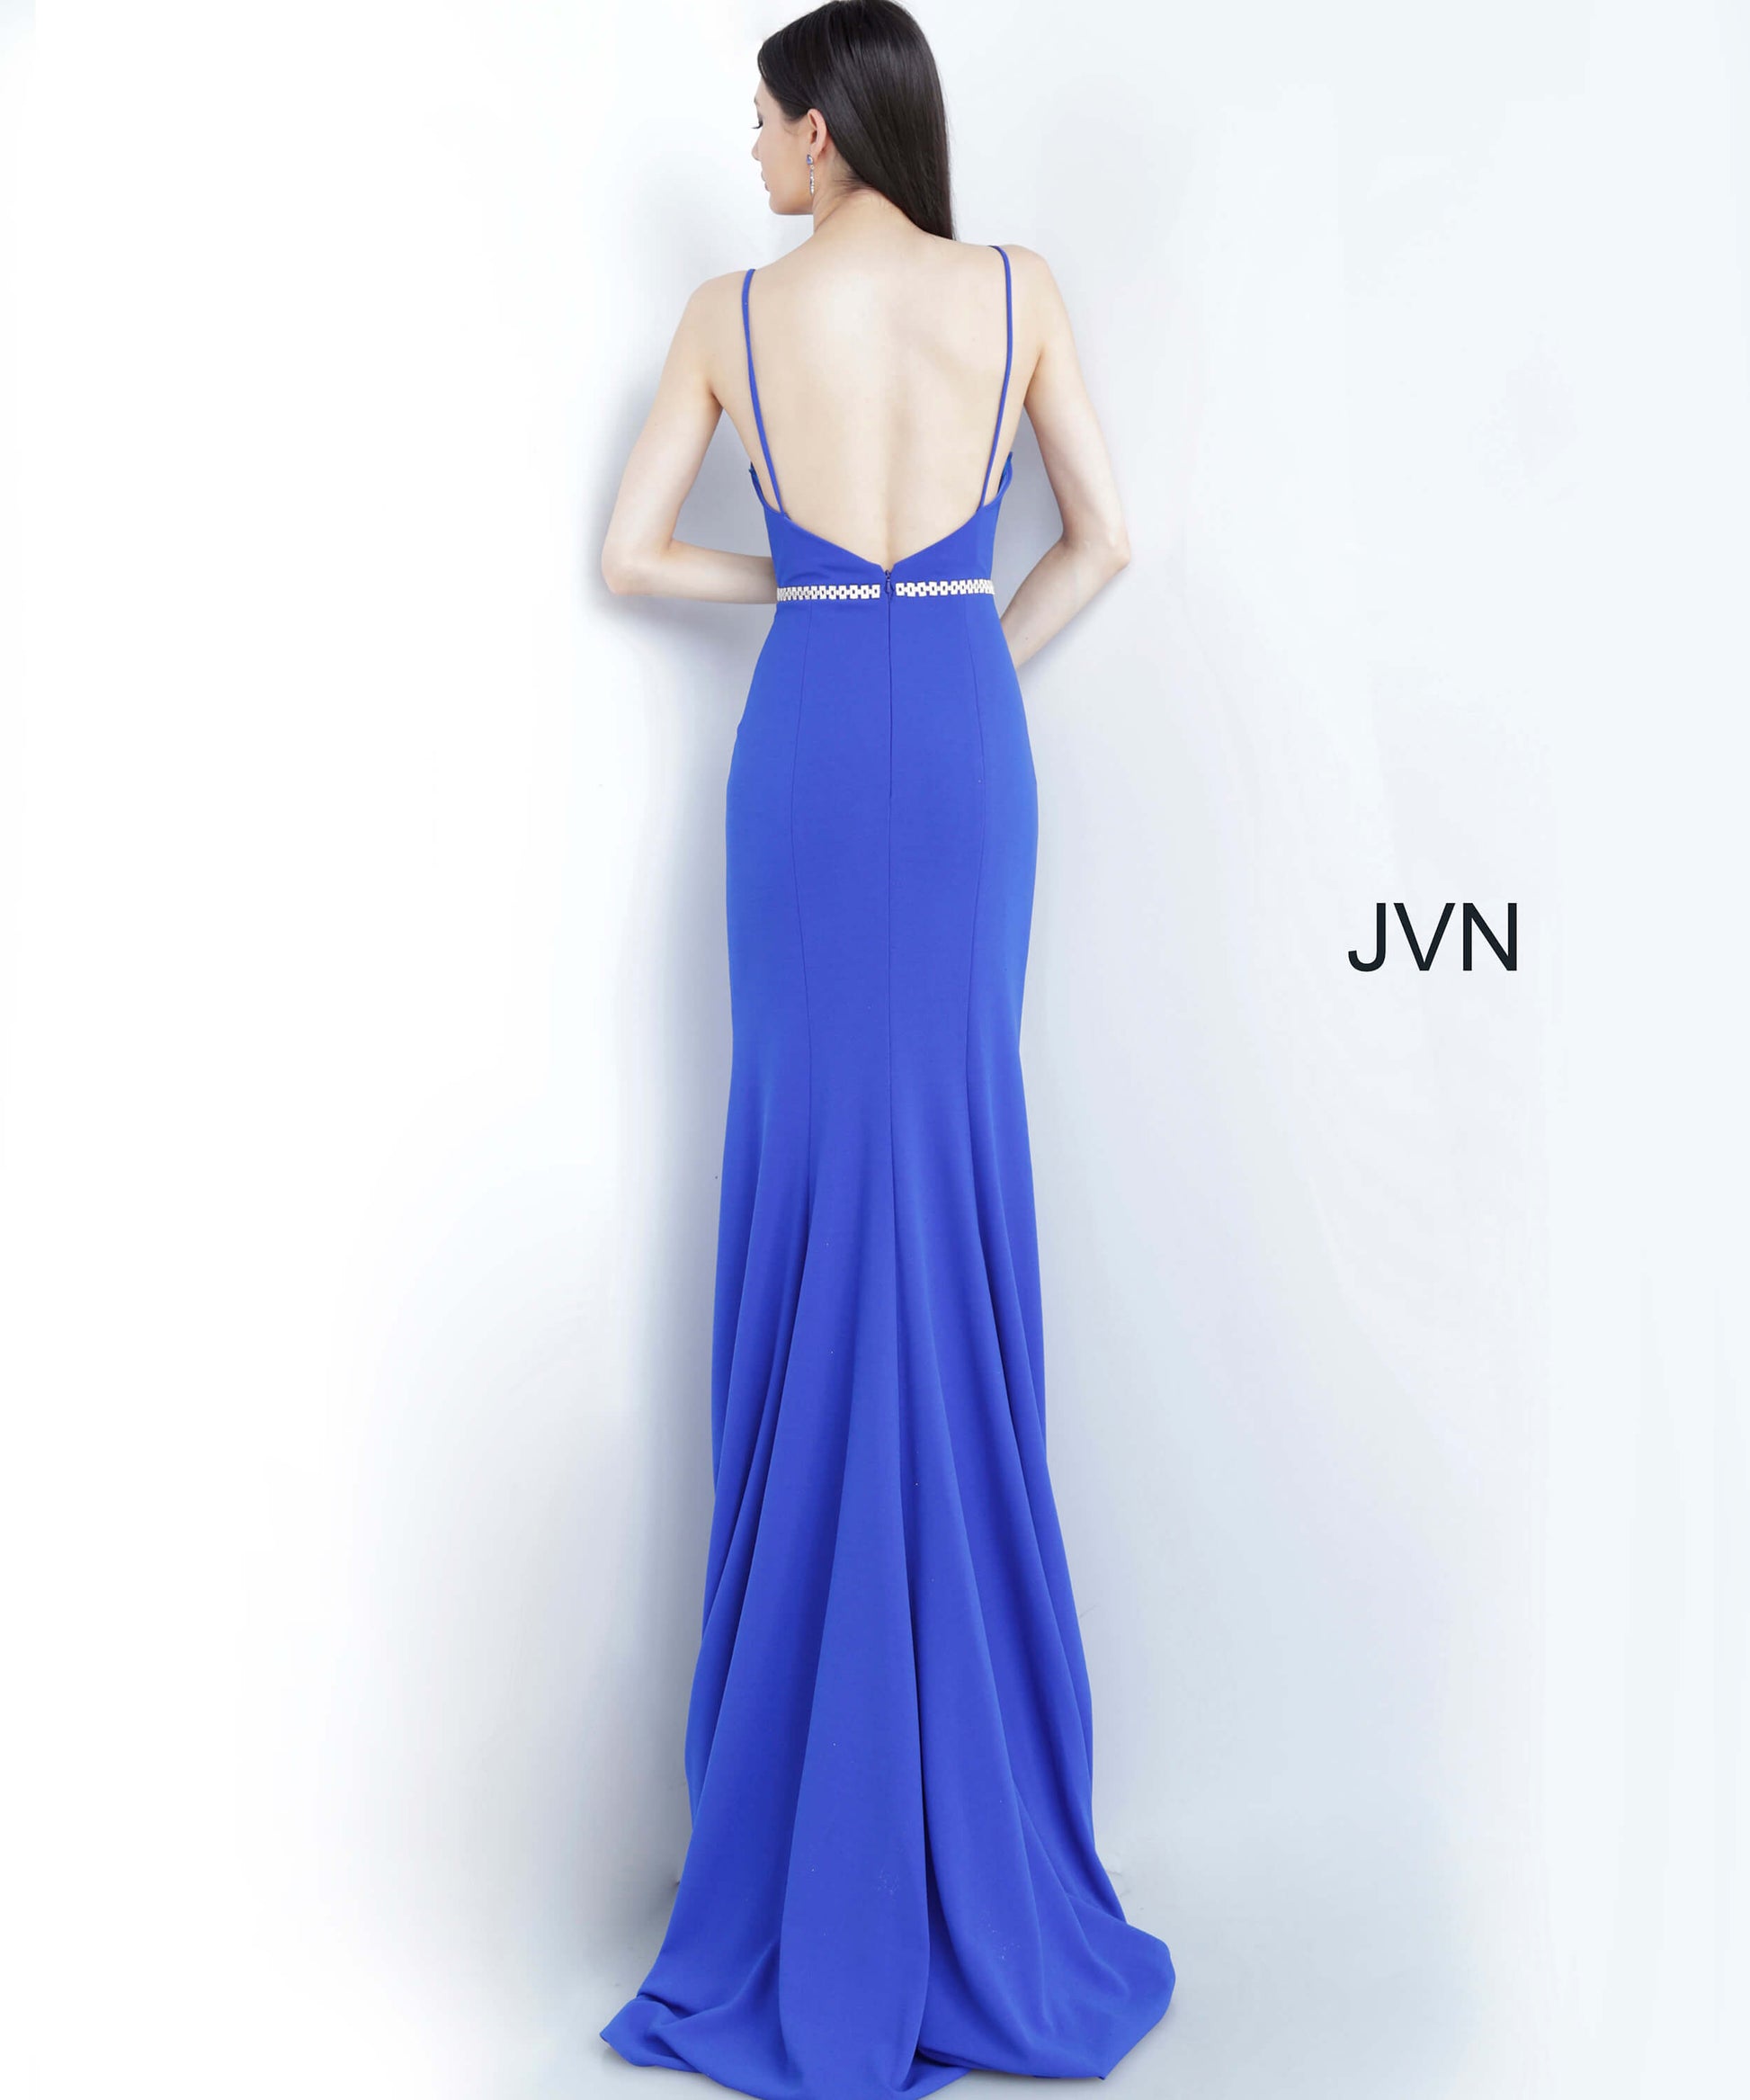 JVN02713-Royal-Prom-Dress-Back-v-neckline-ruched-slit